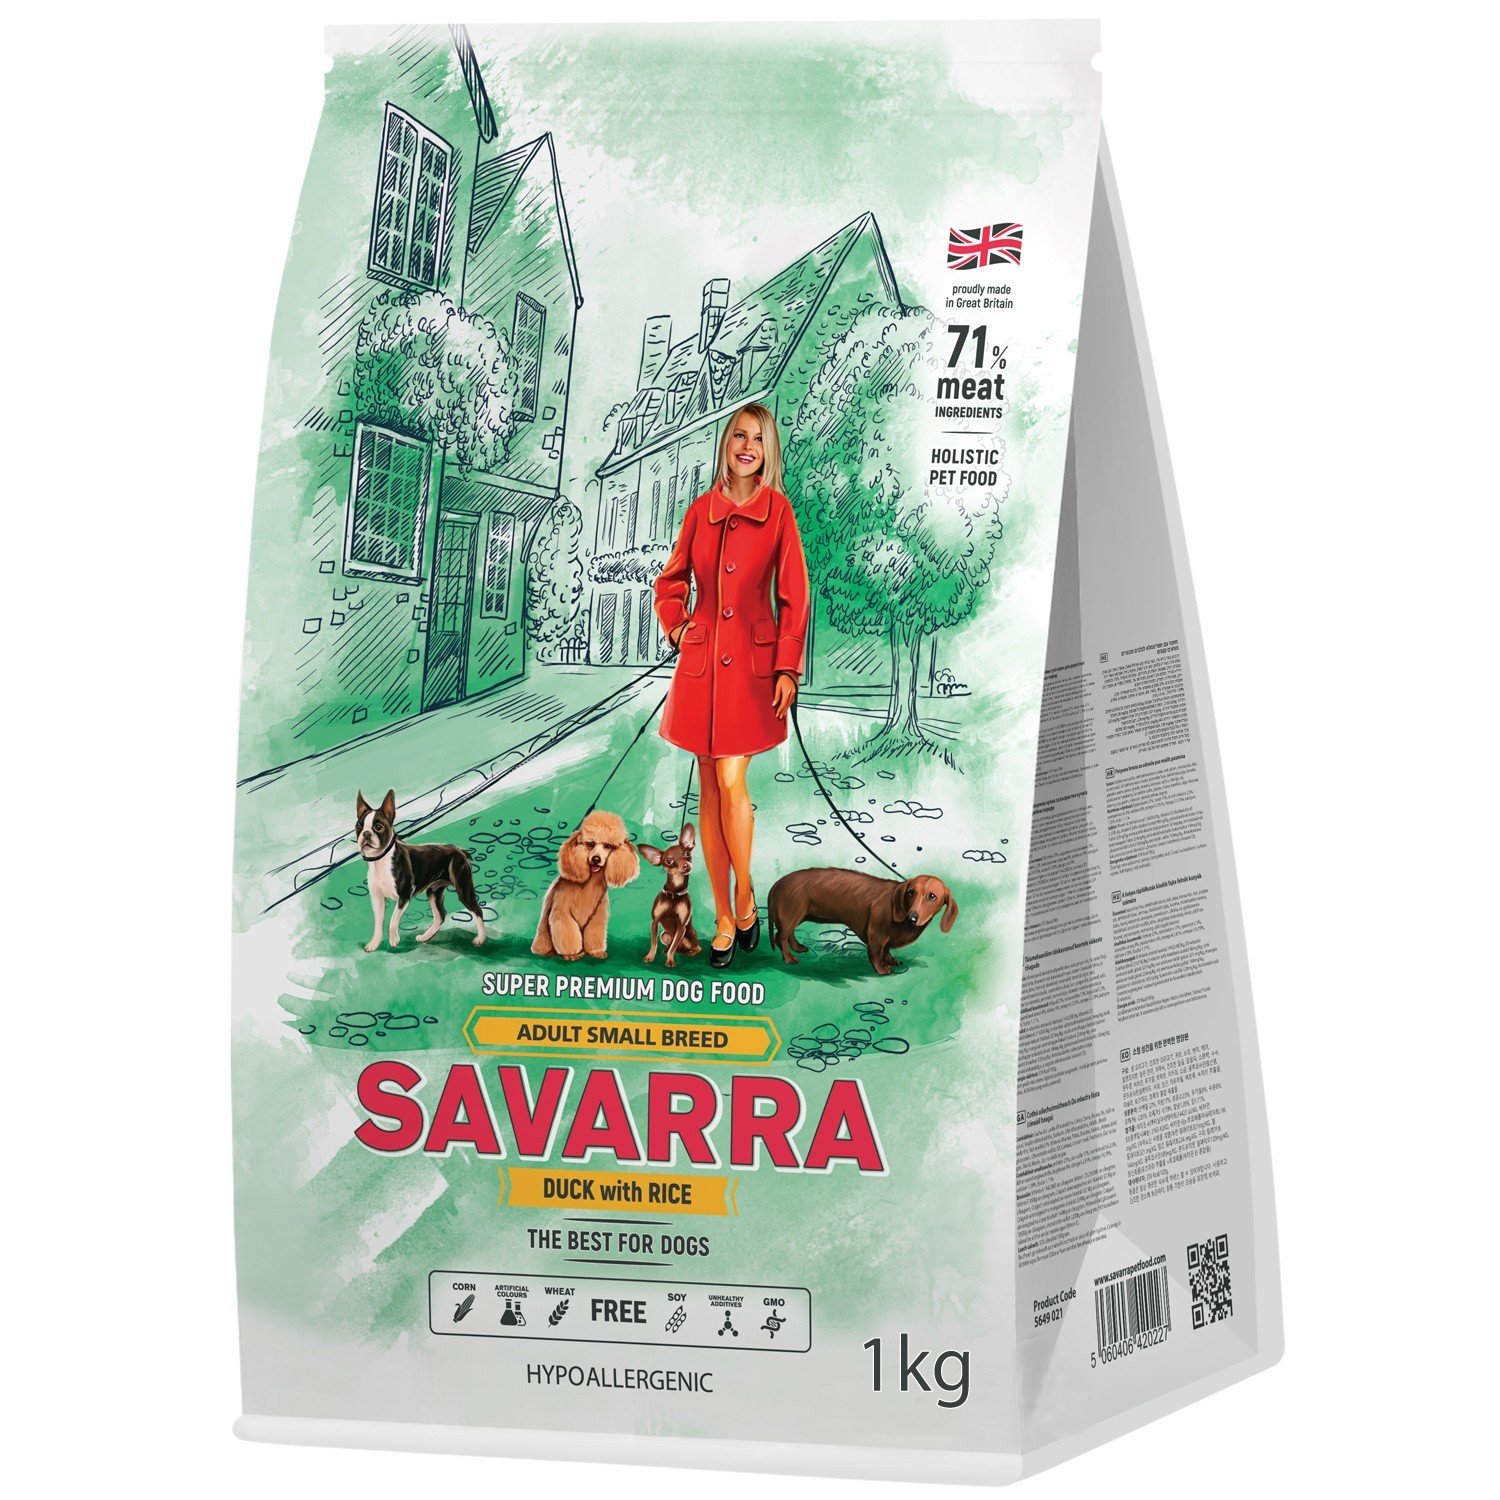 Саварра 1кг - Утка - для Мелких собак (Savarra)